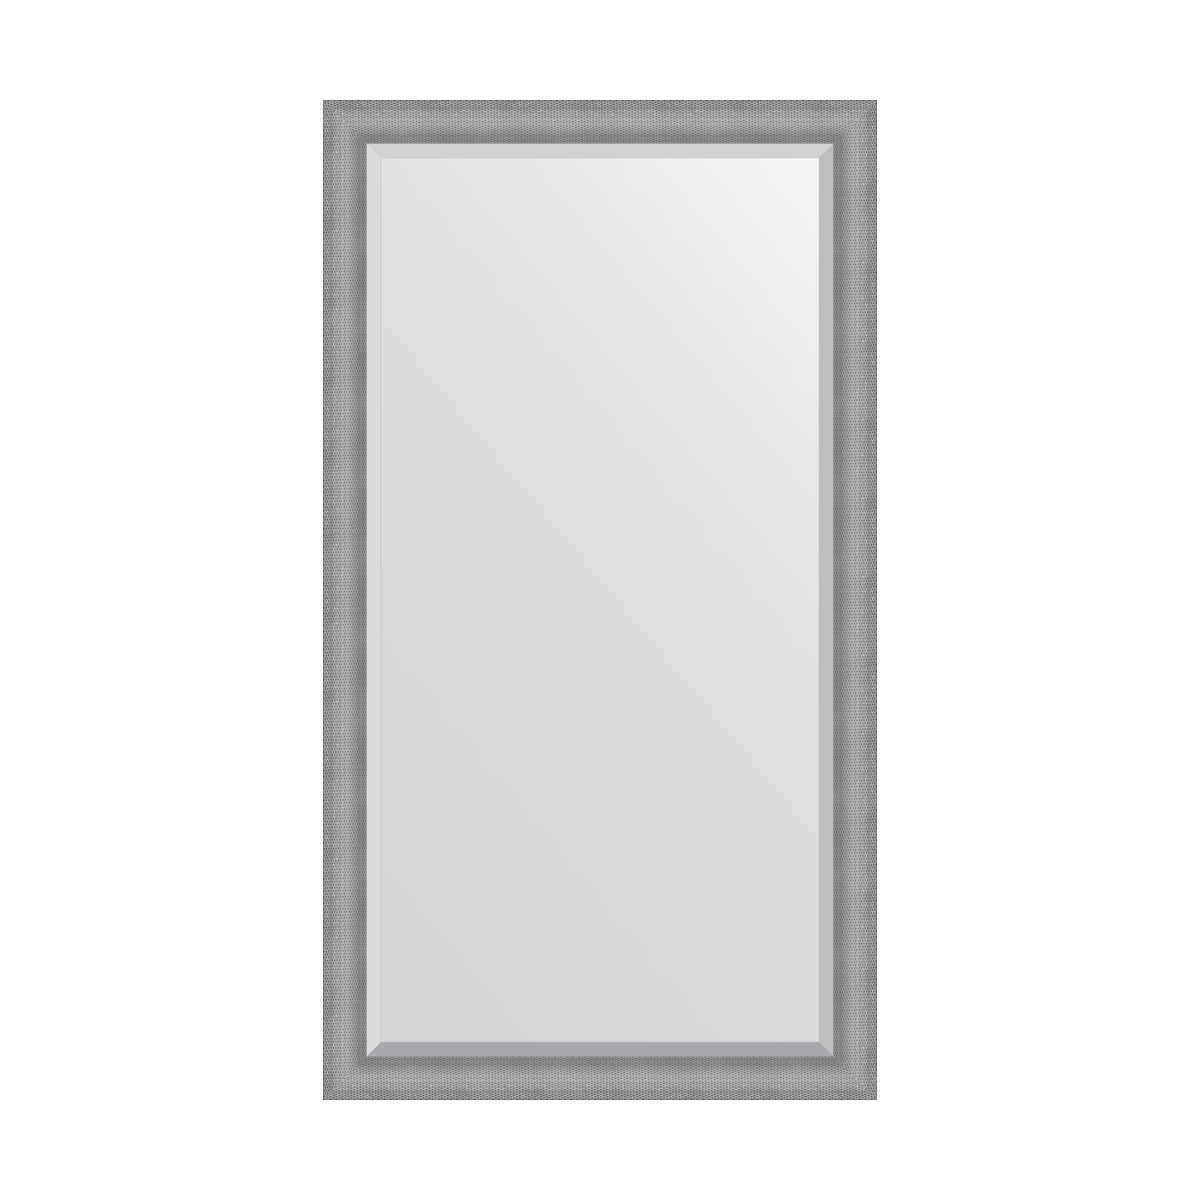 Зеркало напольное с фацетом в багетной раме Evoform серебряная кольчуга 88 мм 112x202 см зеркало напольное с фацетом в багетной раме медная кольчуга 88 мм 112x202 см